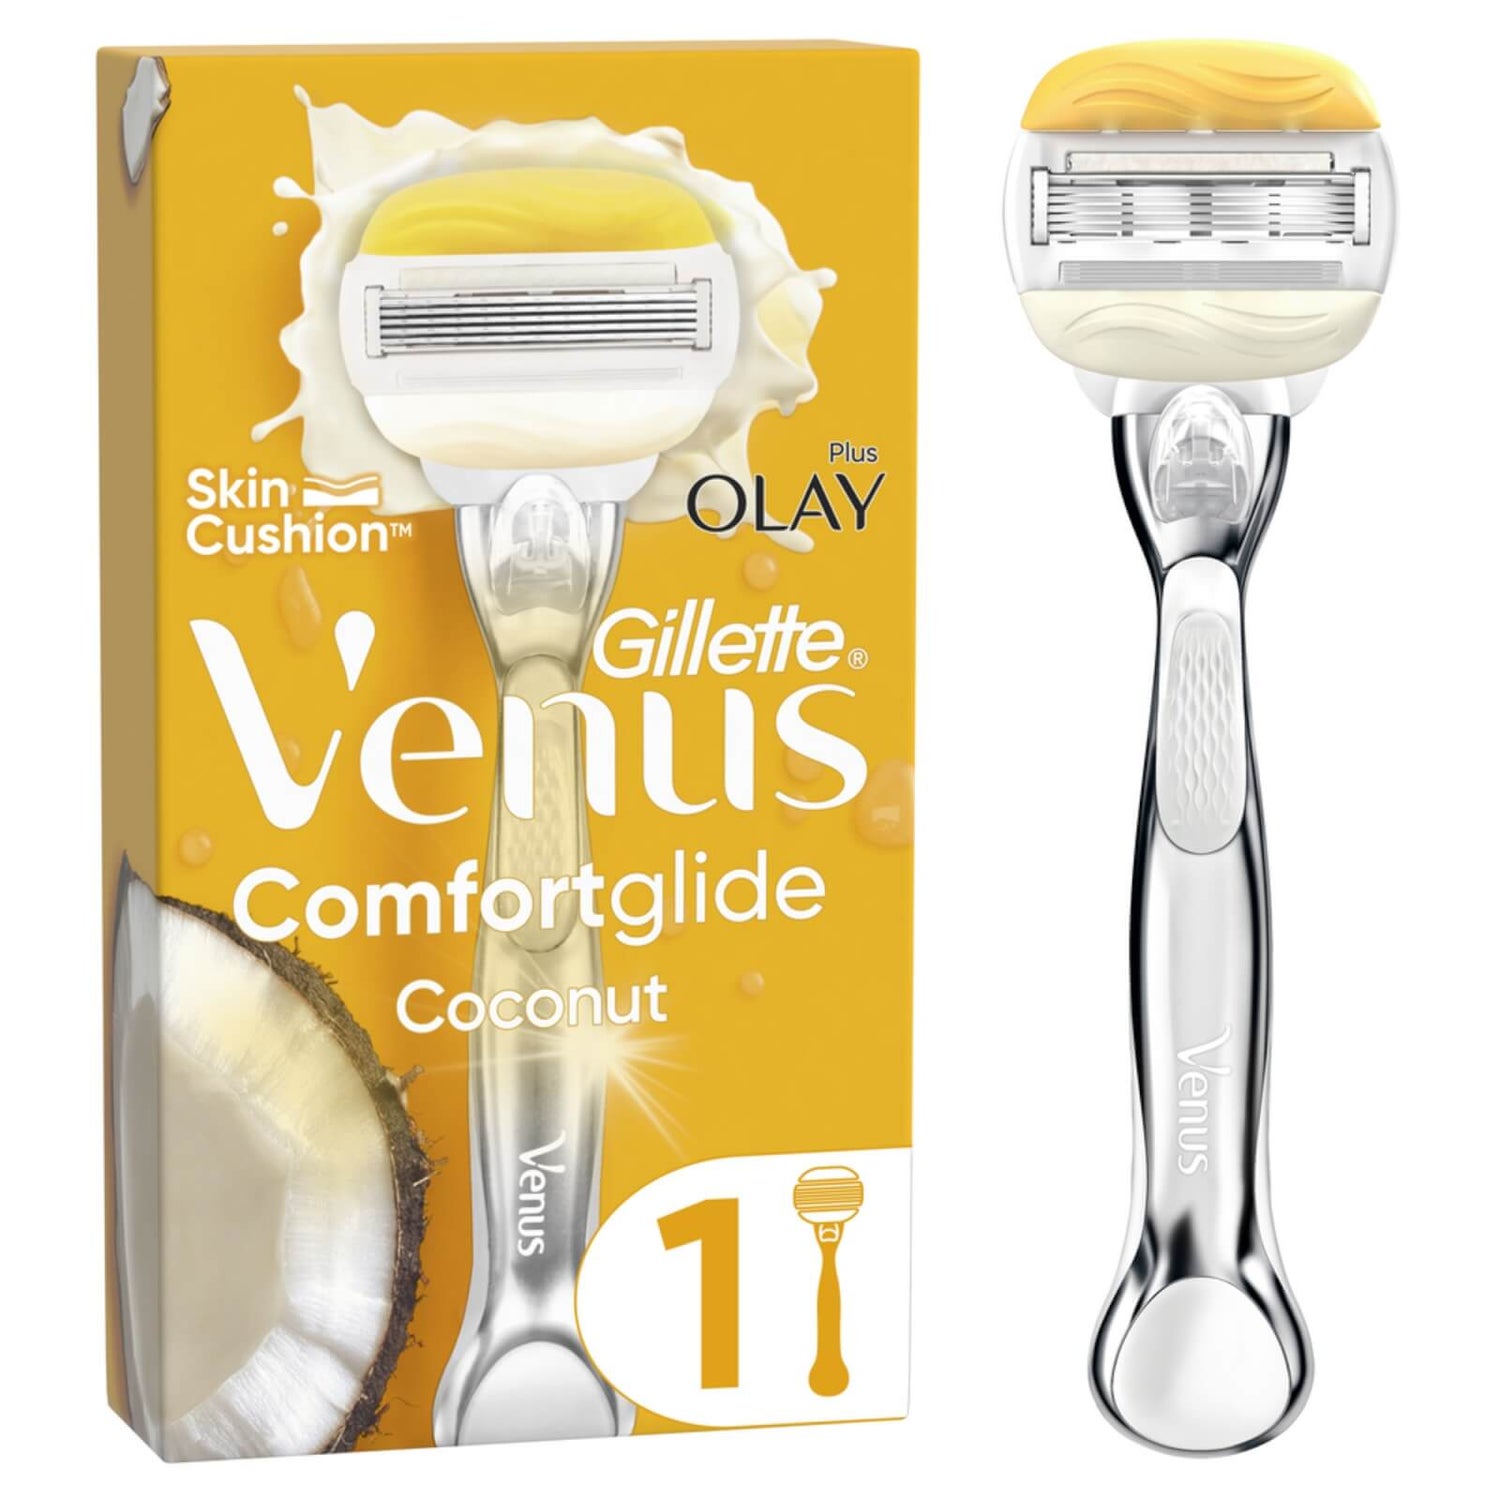 Venus ComfortGlide Coconut mit Olay Platinum-Griff